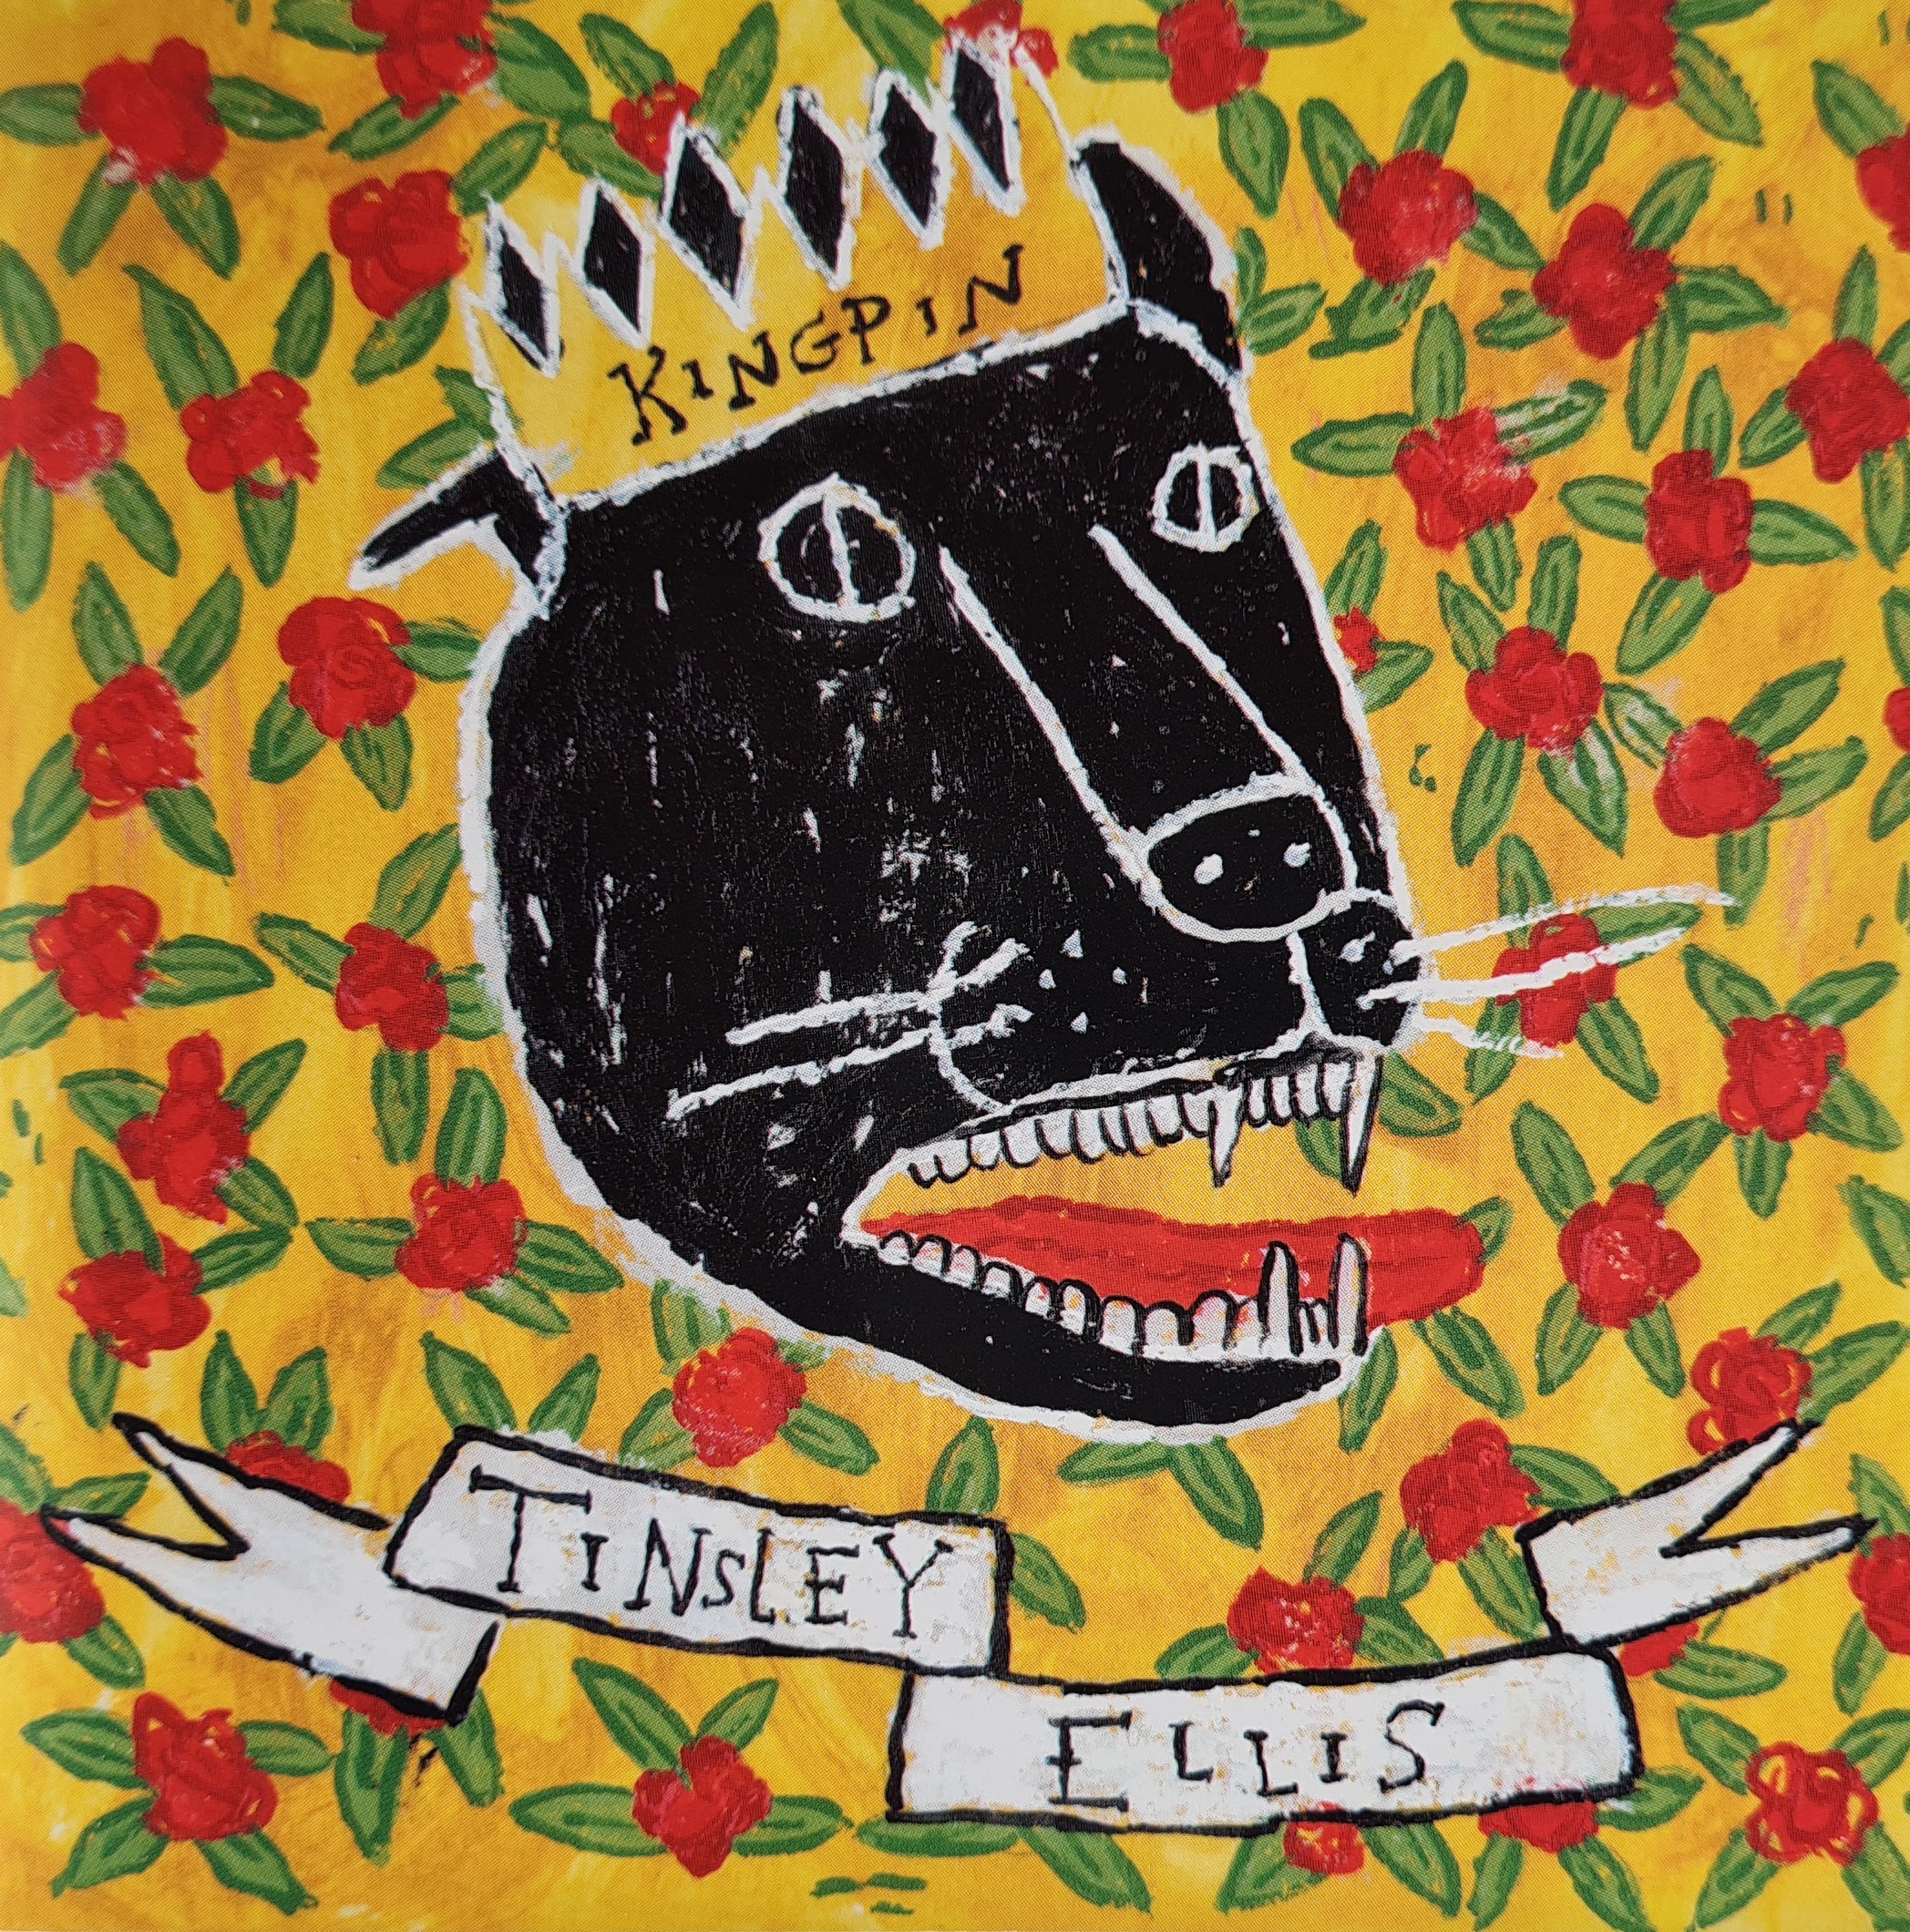 Tinsley Ellis - Kingpin (CD)